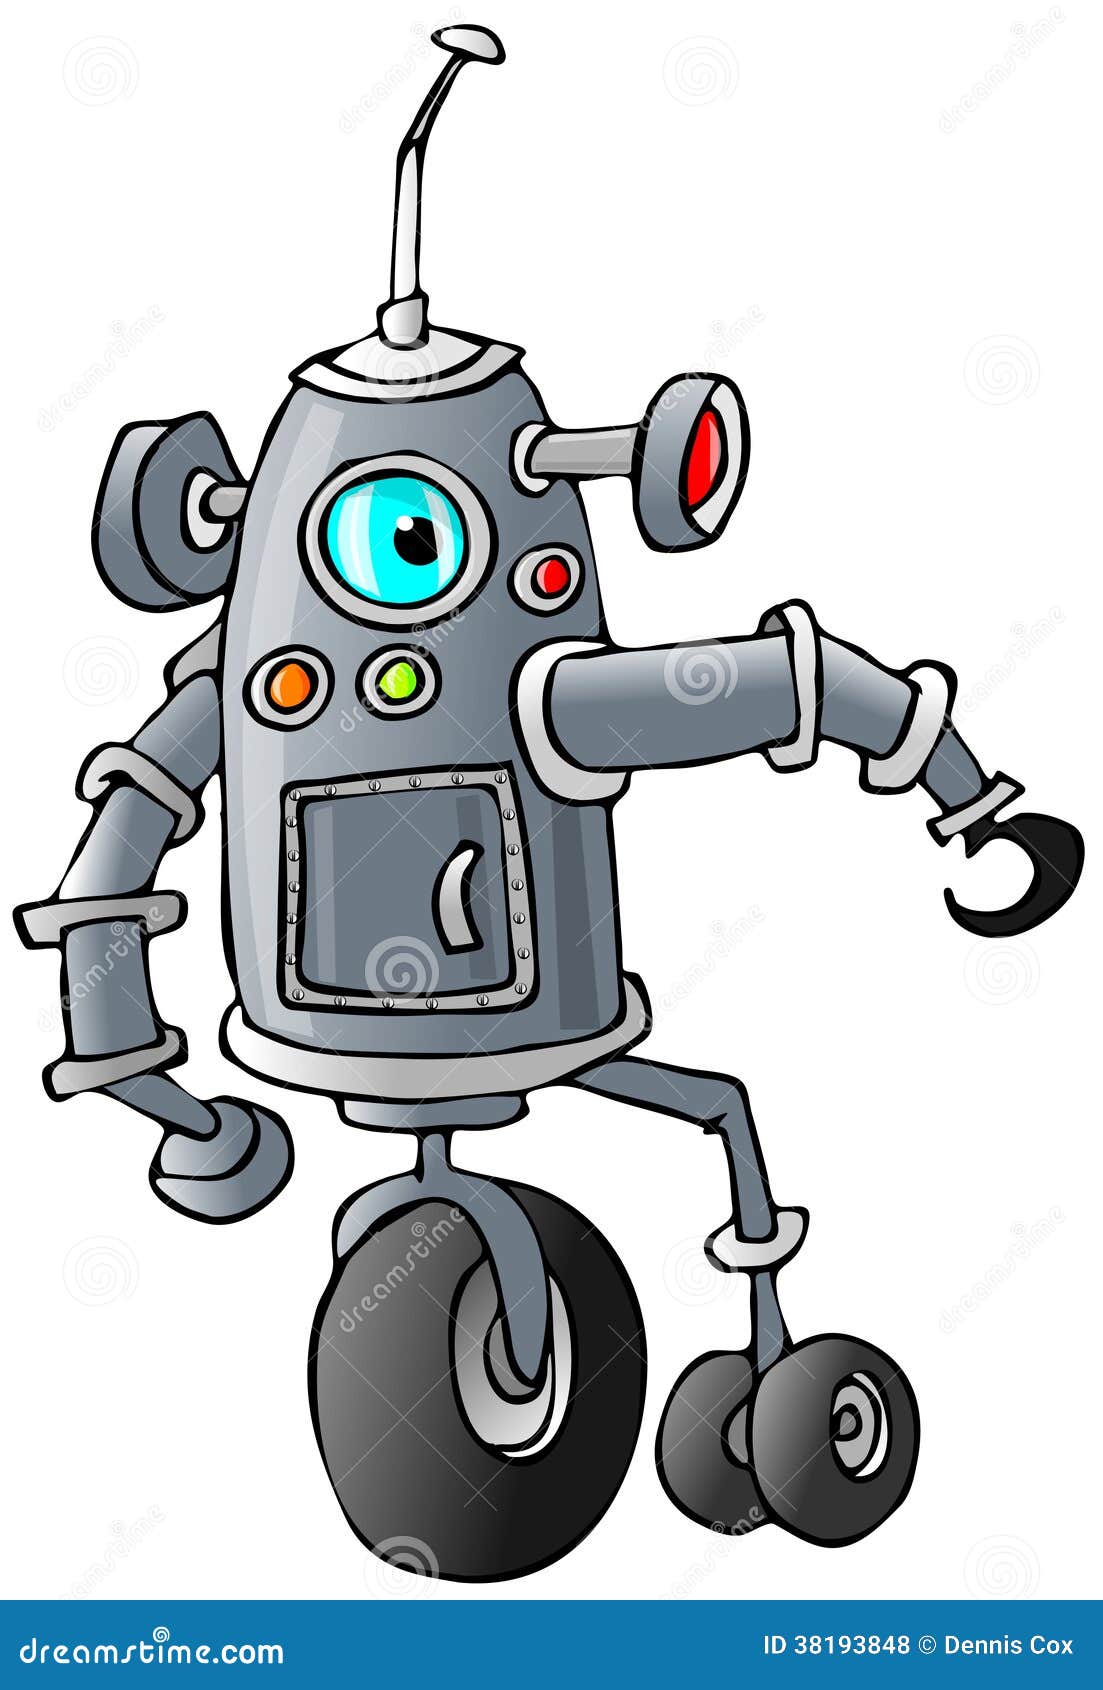 Questa illustrazione descrive un robot del Bi-baccello con le varie estensioni e un'antenna piegata.